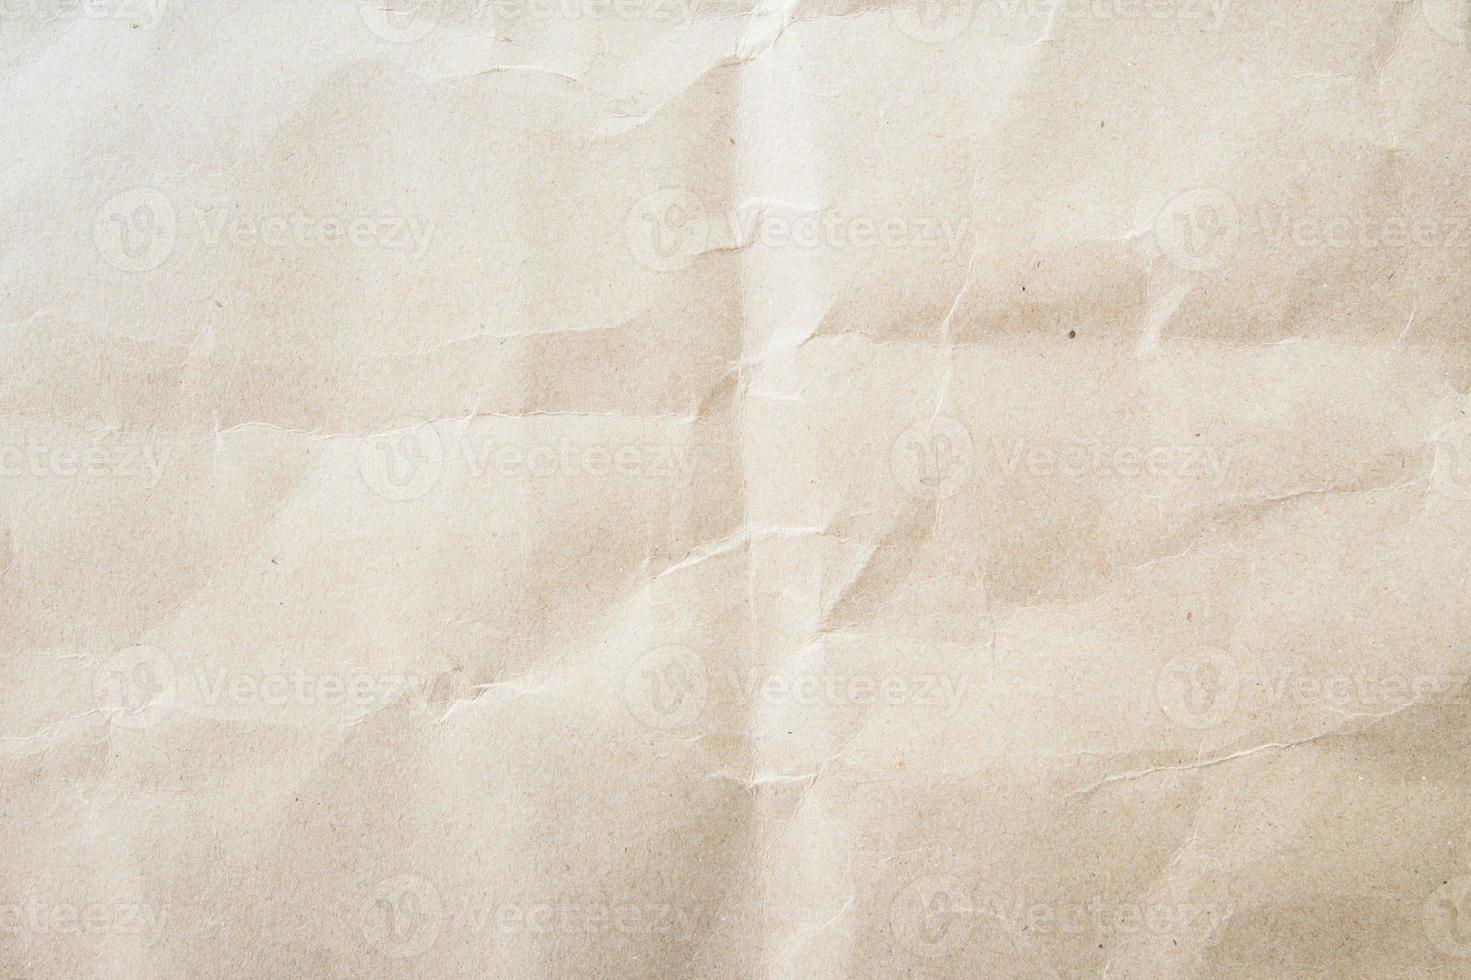 fond de papier beige blanc texture légère texture rugueuse tacheté copie vierge arrière-plan de l'espace photo